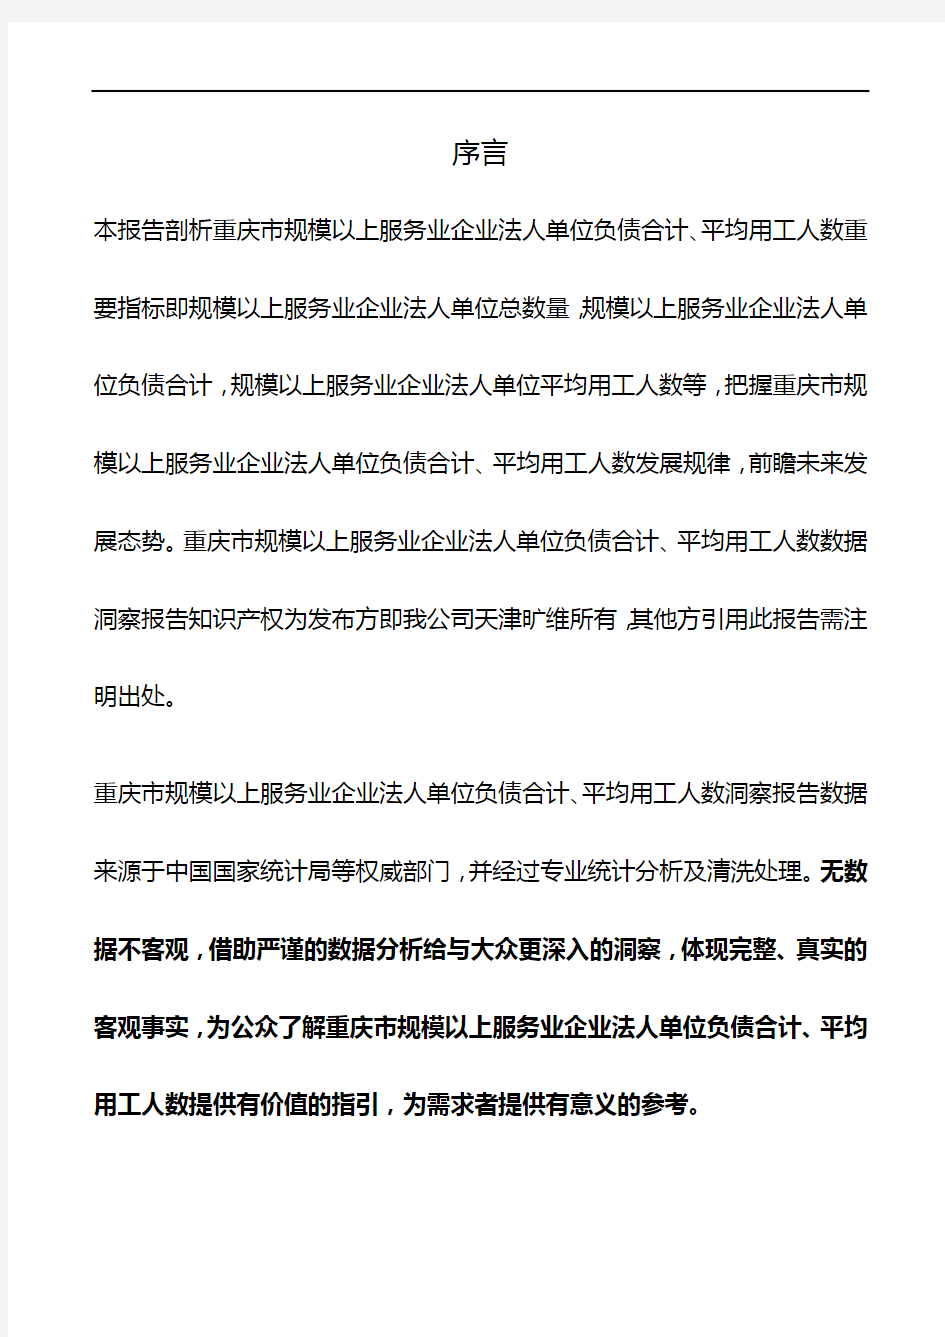 重庆市规模以上服务业企业法人单位负债合计、平均用工人数3年数据洞察报告2019版